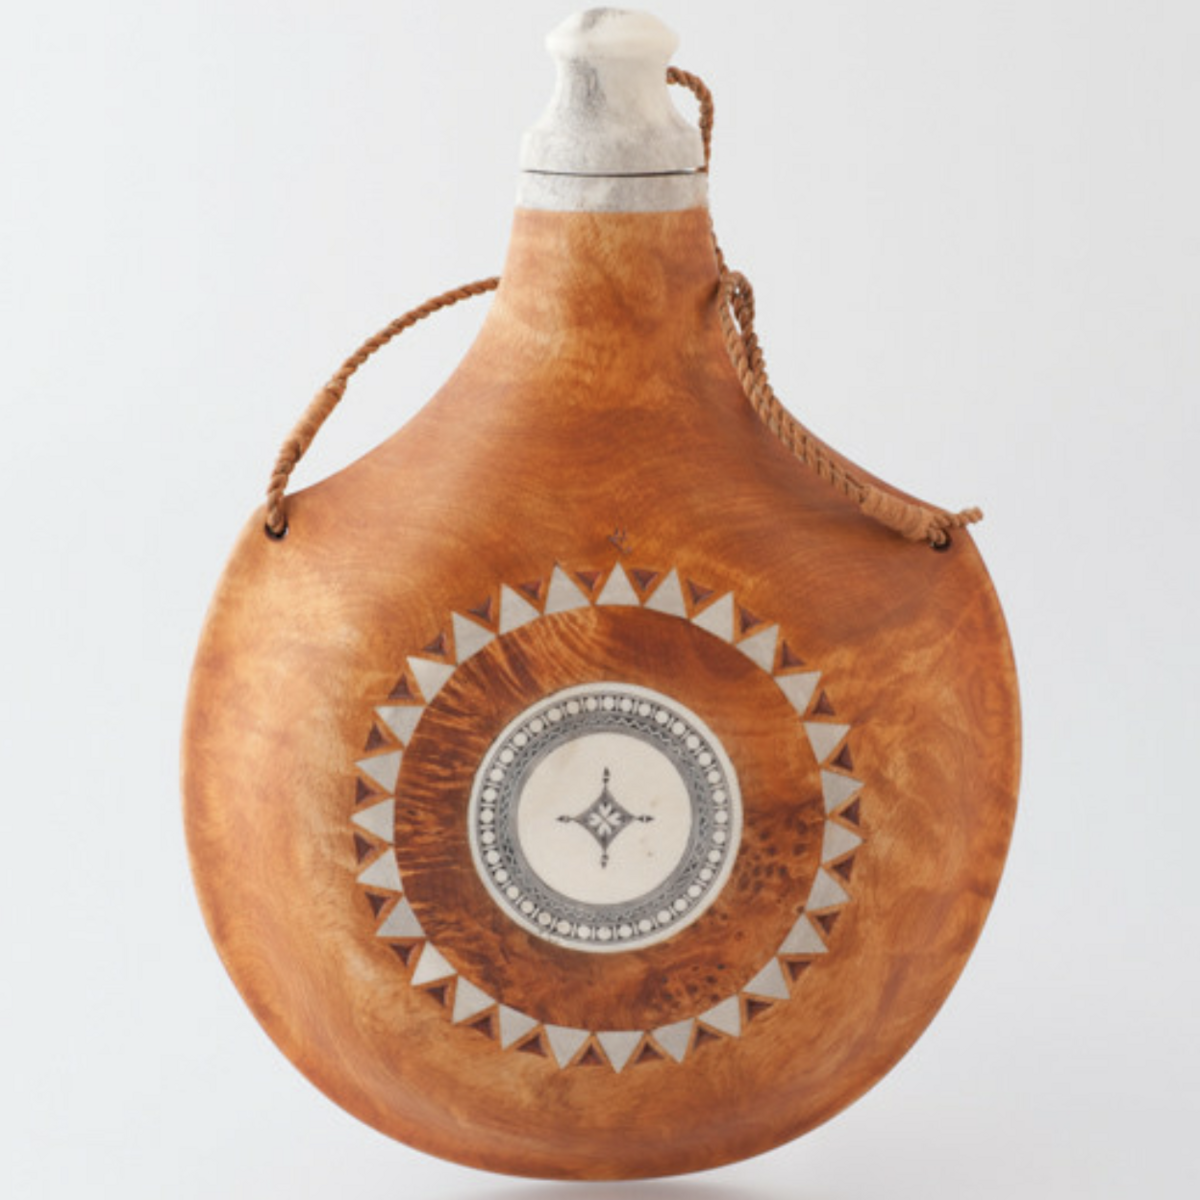 Bilde som viser en saltflaske i bjørketre som er dekorert med innlagte biter av reinhorn. Foto